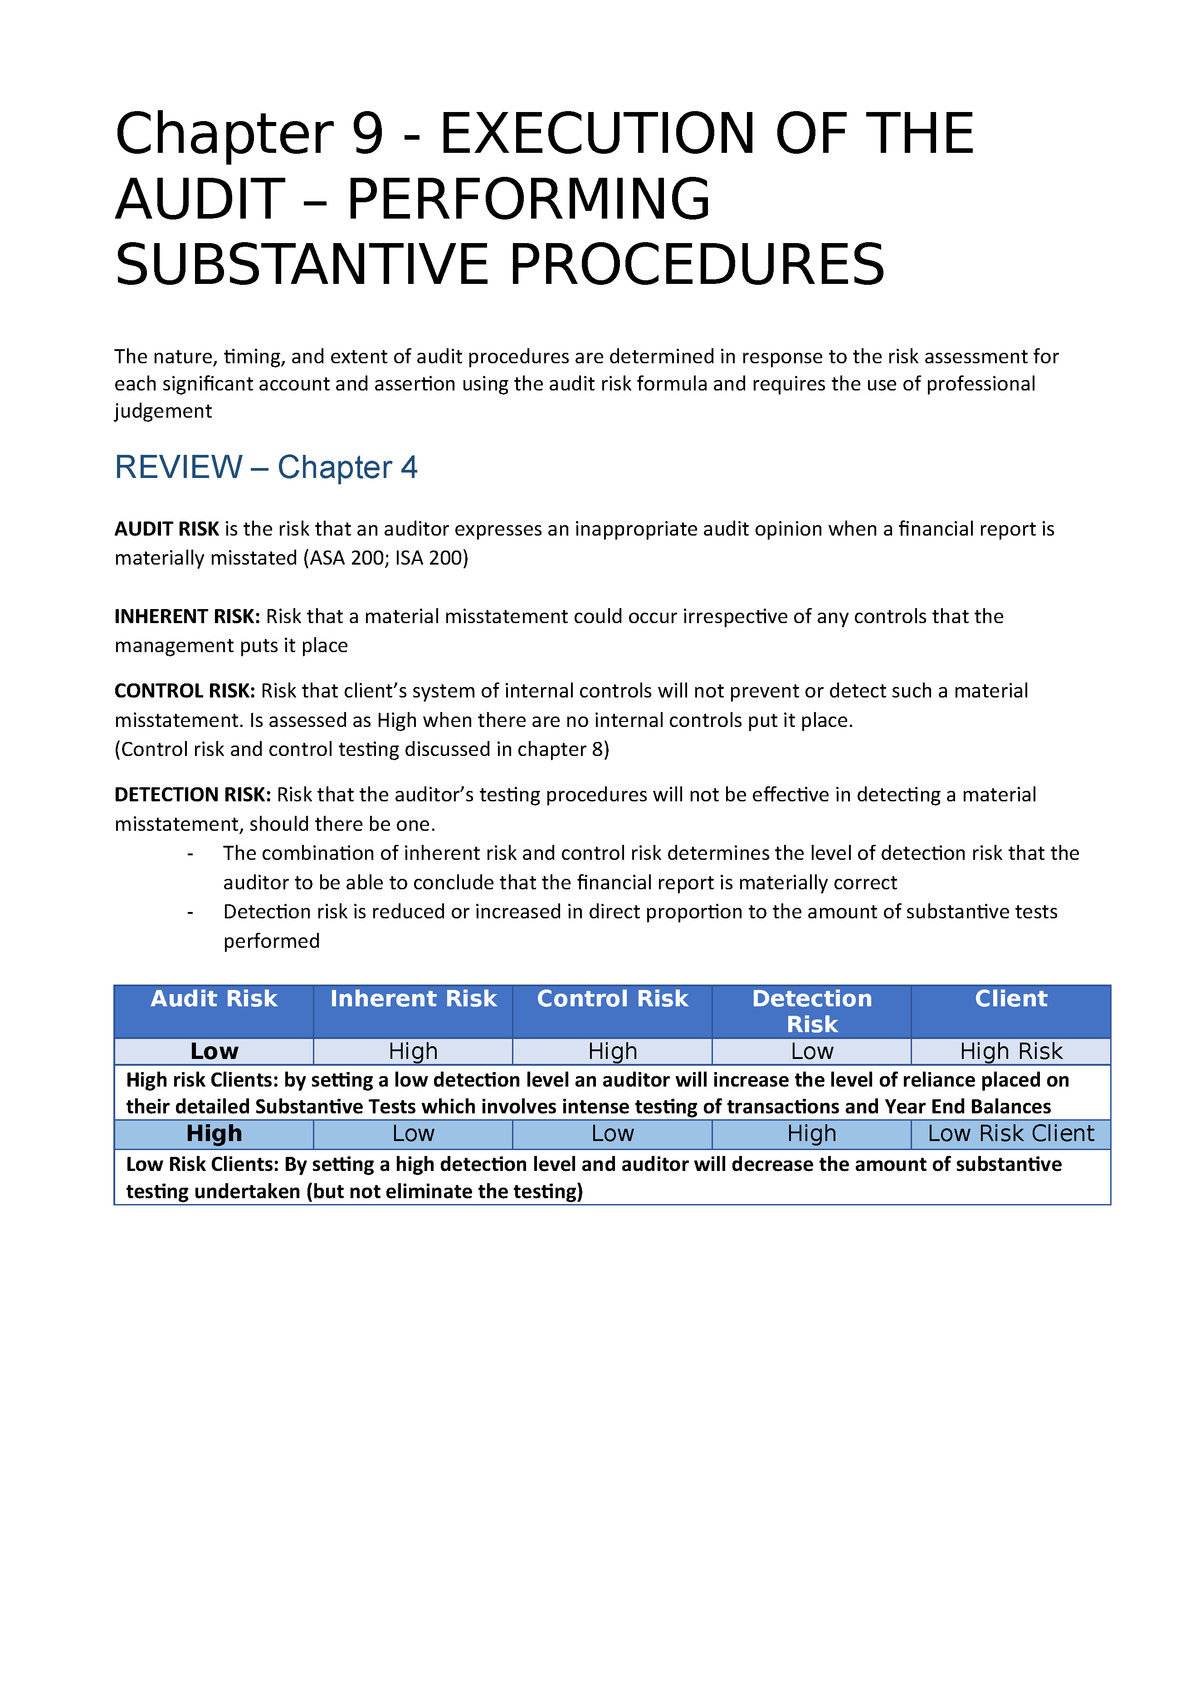 Substantive audit tests